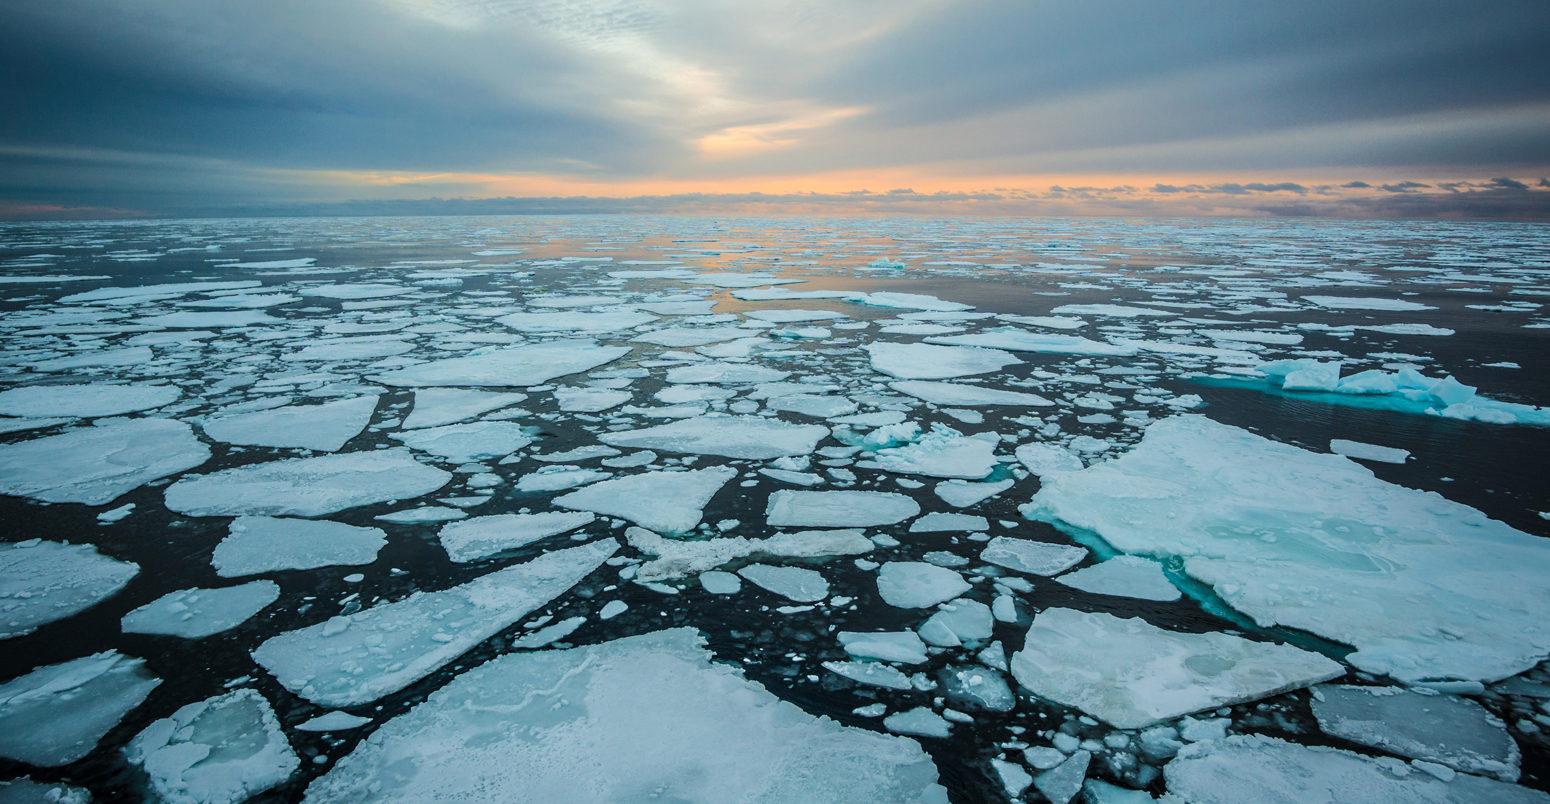 Ученые предрекли почти полное летнее таяние морского льда в Арктике к 2050 году